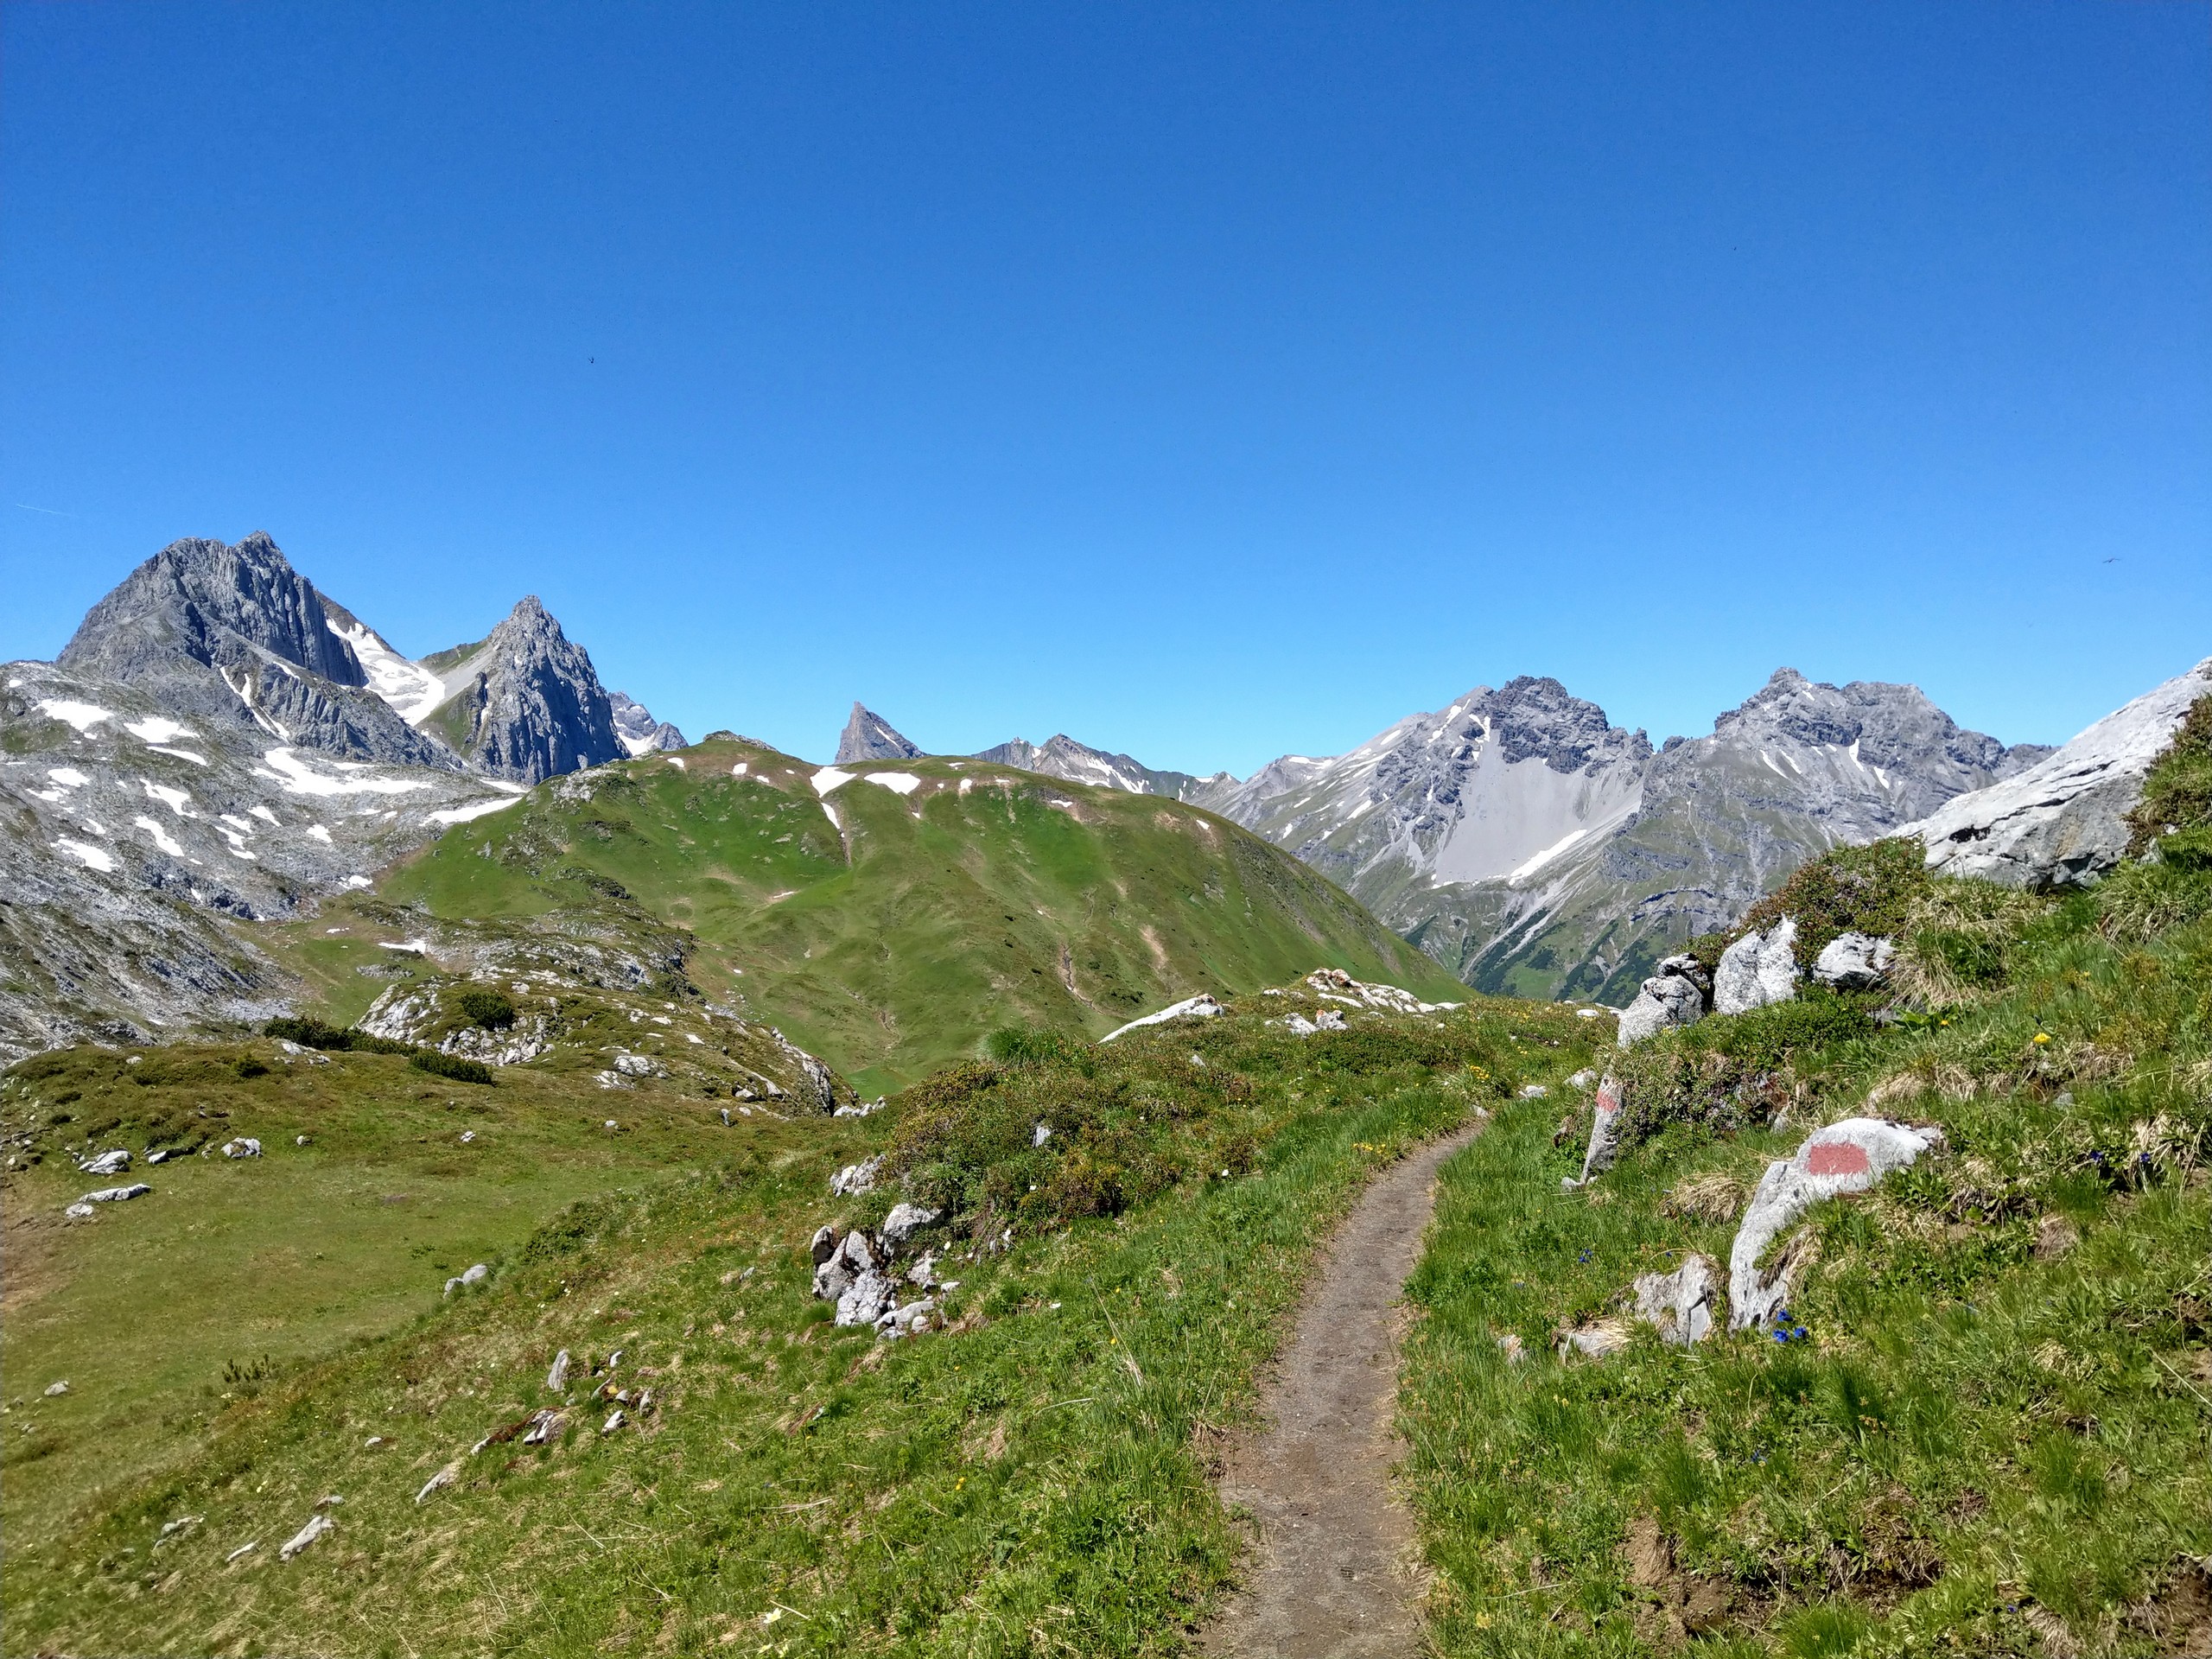 Beautiful walking path in the Alps